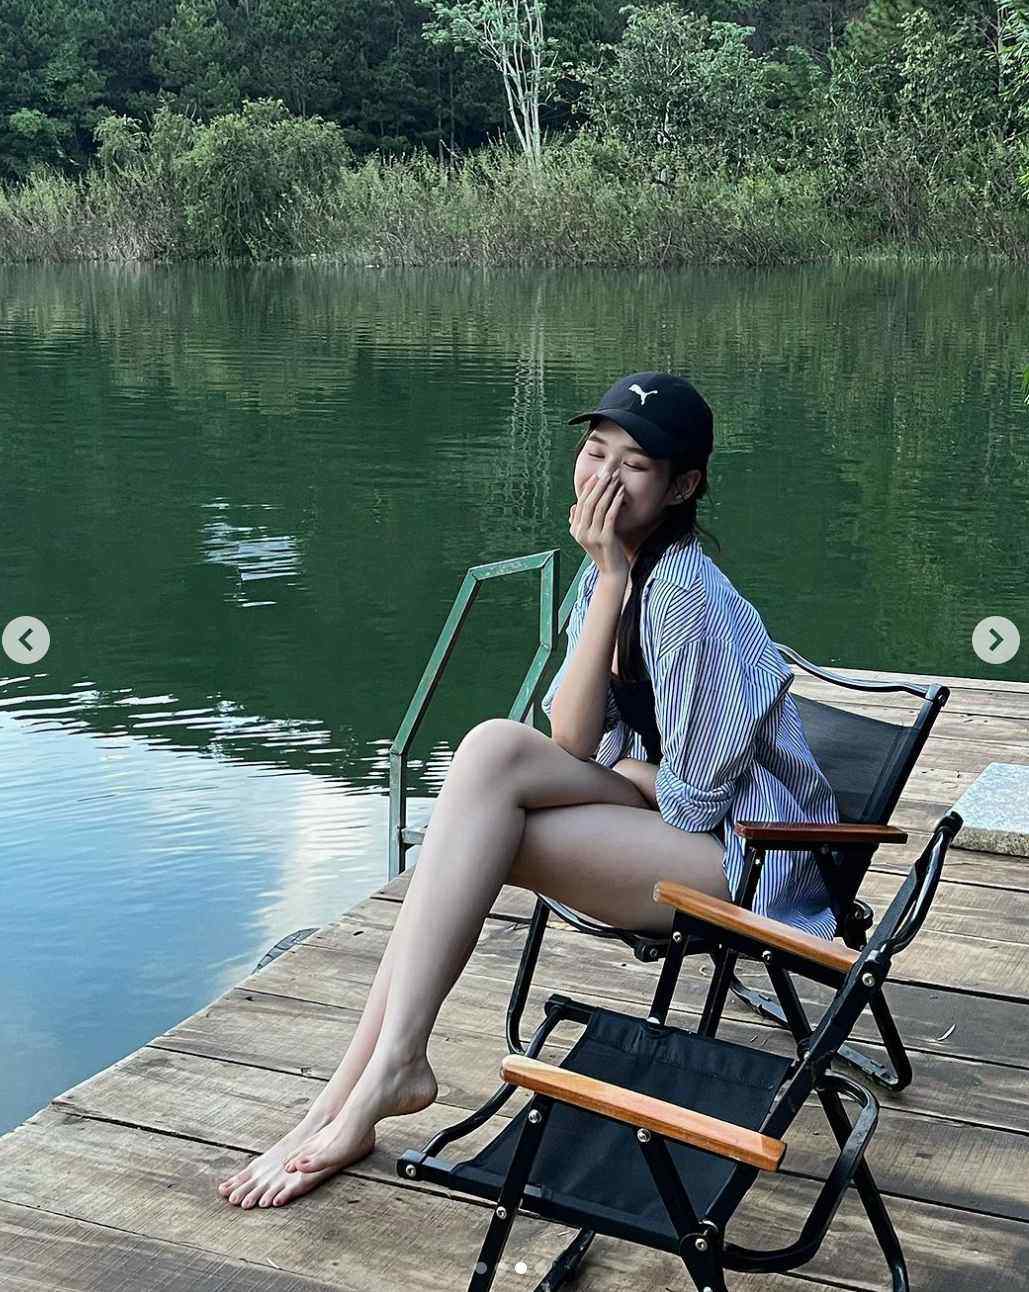 "Hoa hậu cấy lúa Thanh Hoá" khoe "cặp chân triệu đô" với kiểu mặc giấu quần - 1